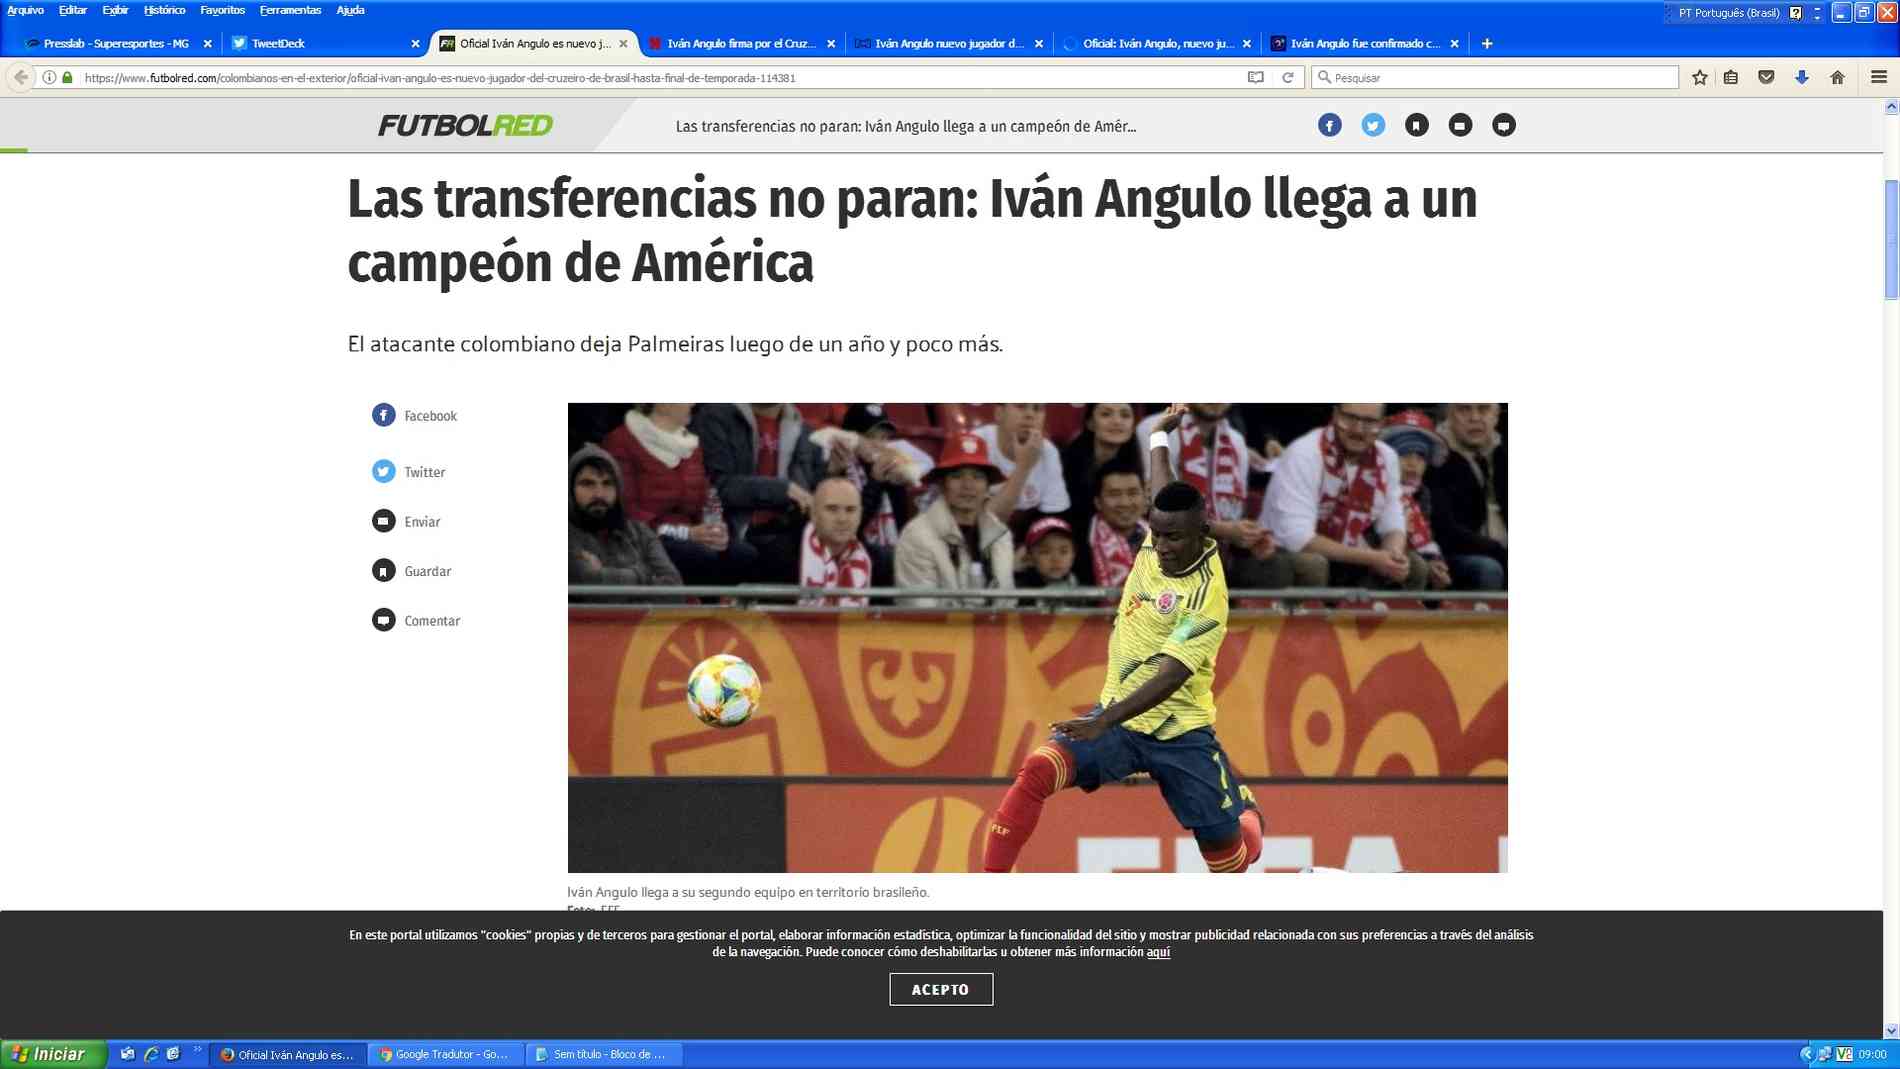 Em post, Iván Angulo se despede do Cruzeiro: 'Fiz questão de jogar esse  primeiro e último jogo com muito suor' - Superesportes